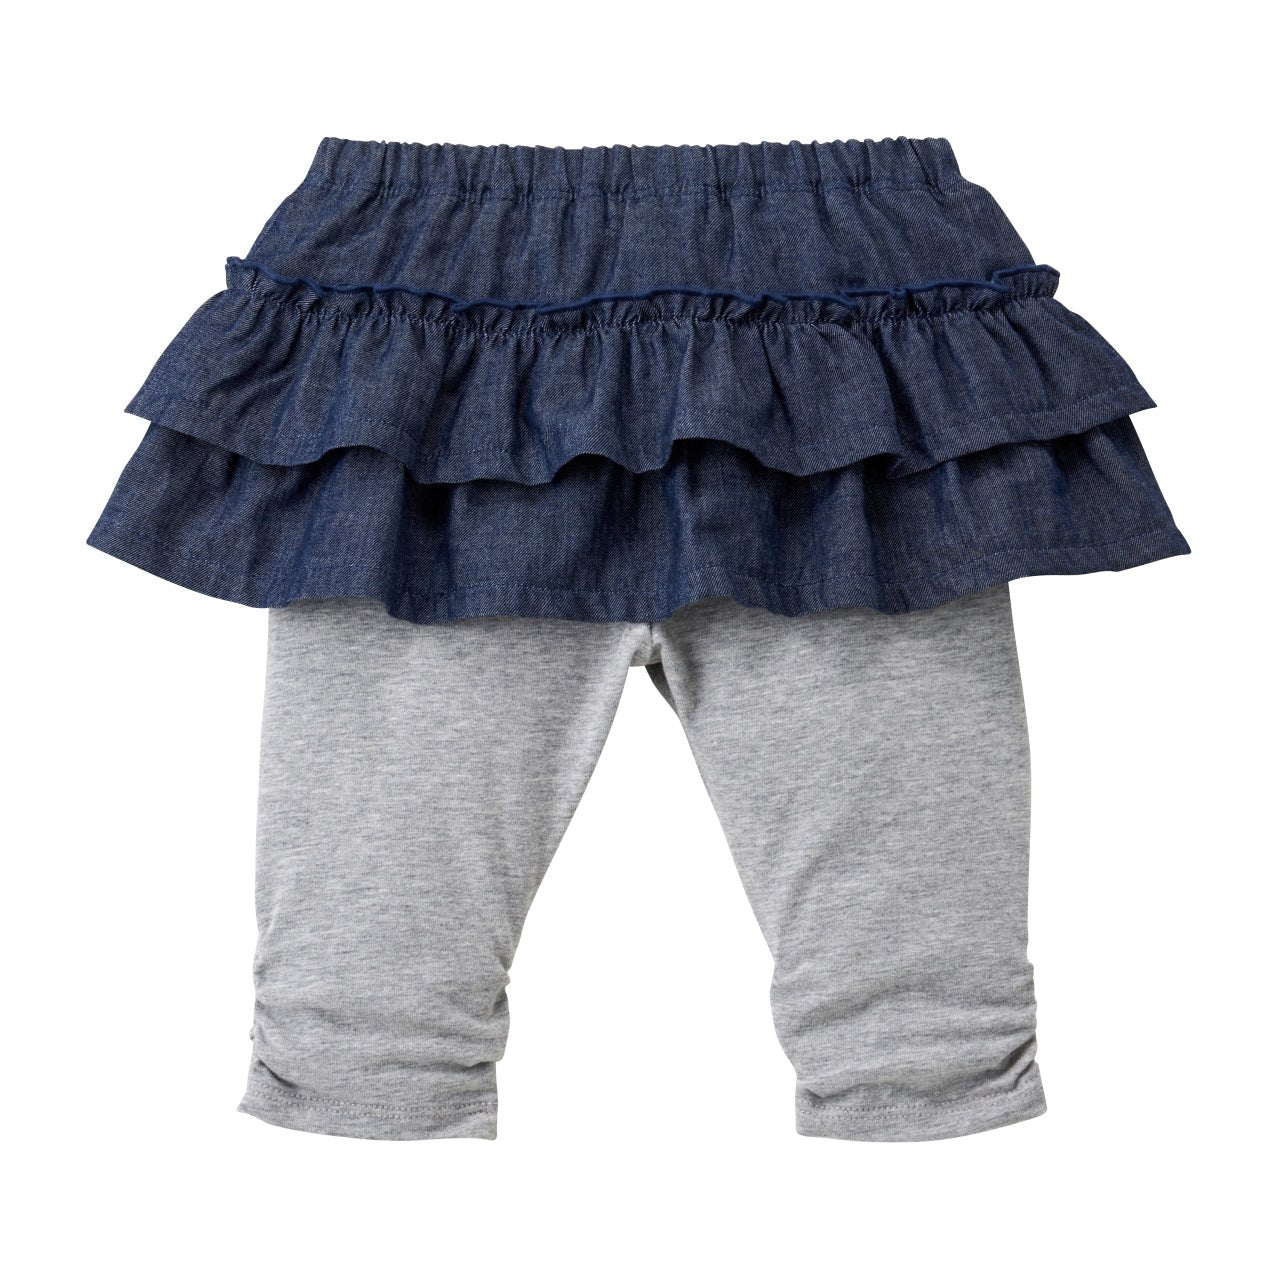 GAP Kids 1969 Girls Size 10 Denim Mini Jean Skirt - Can Wear Over Leggings  | eBay